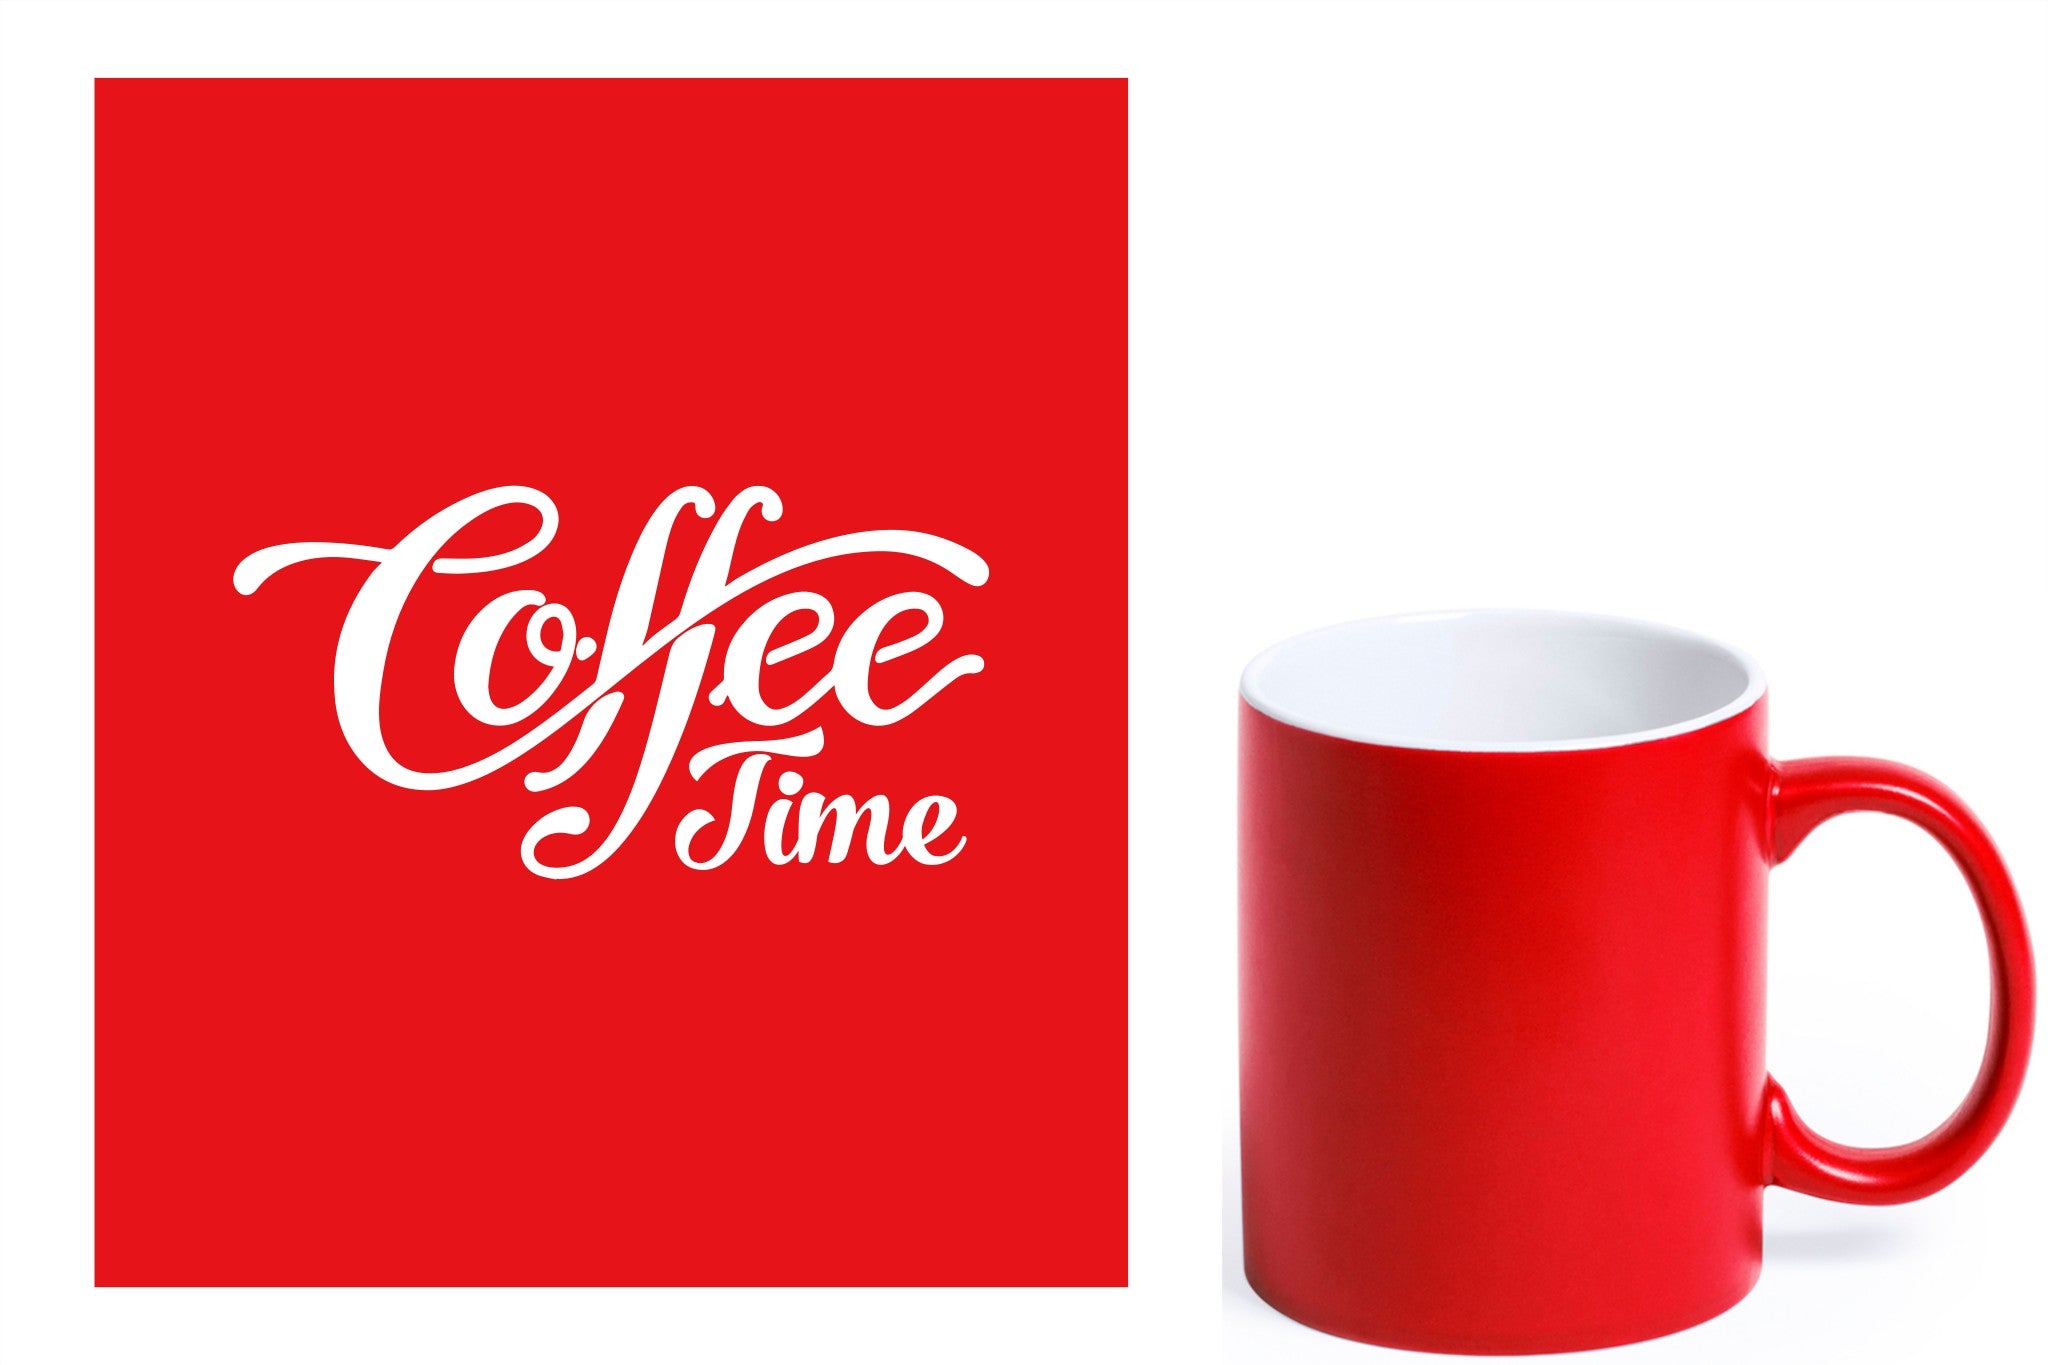 rode keramische mok met witte gravure  'Coffee time'.